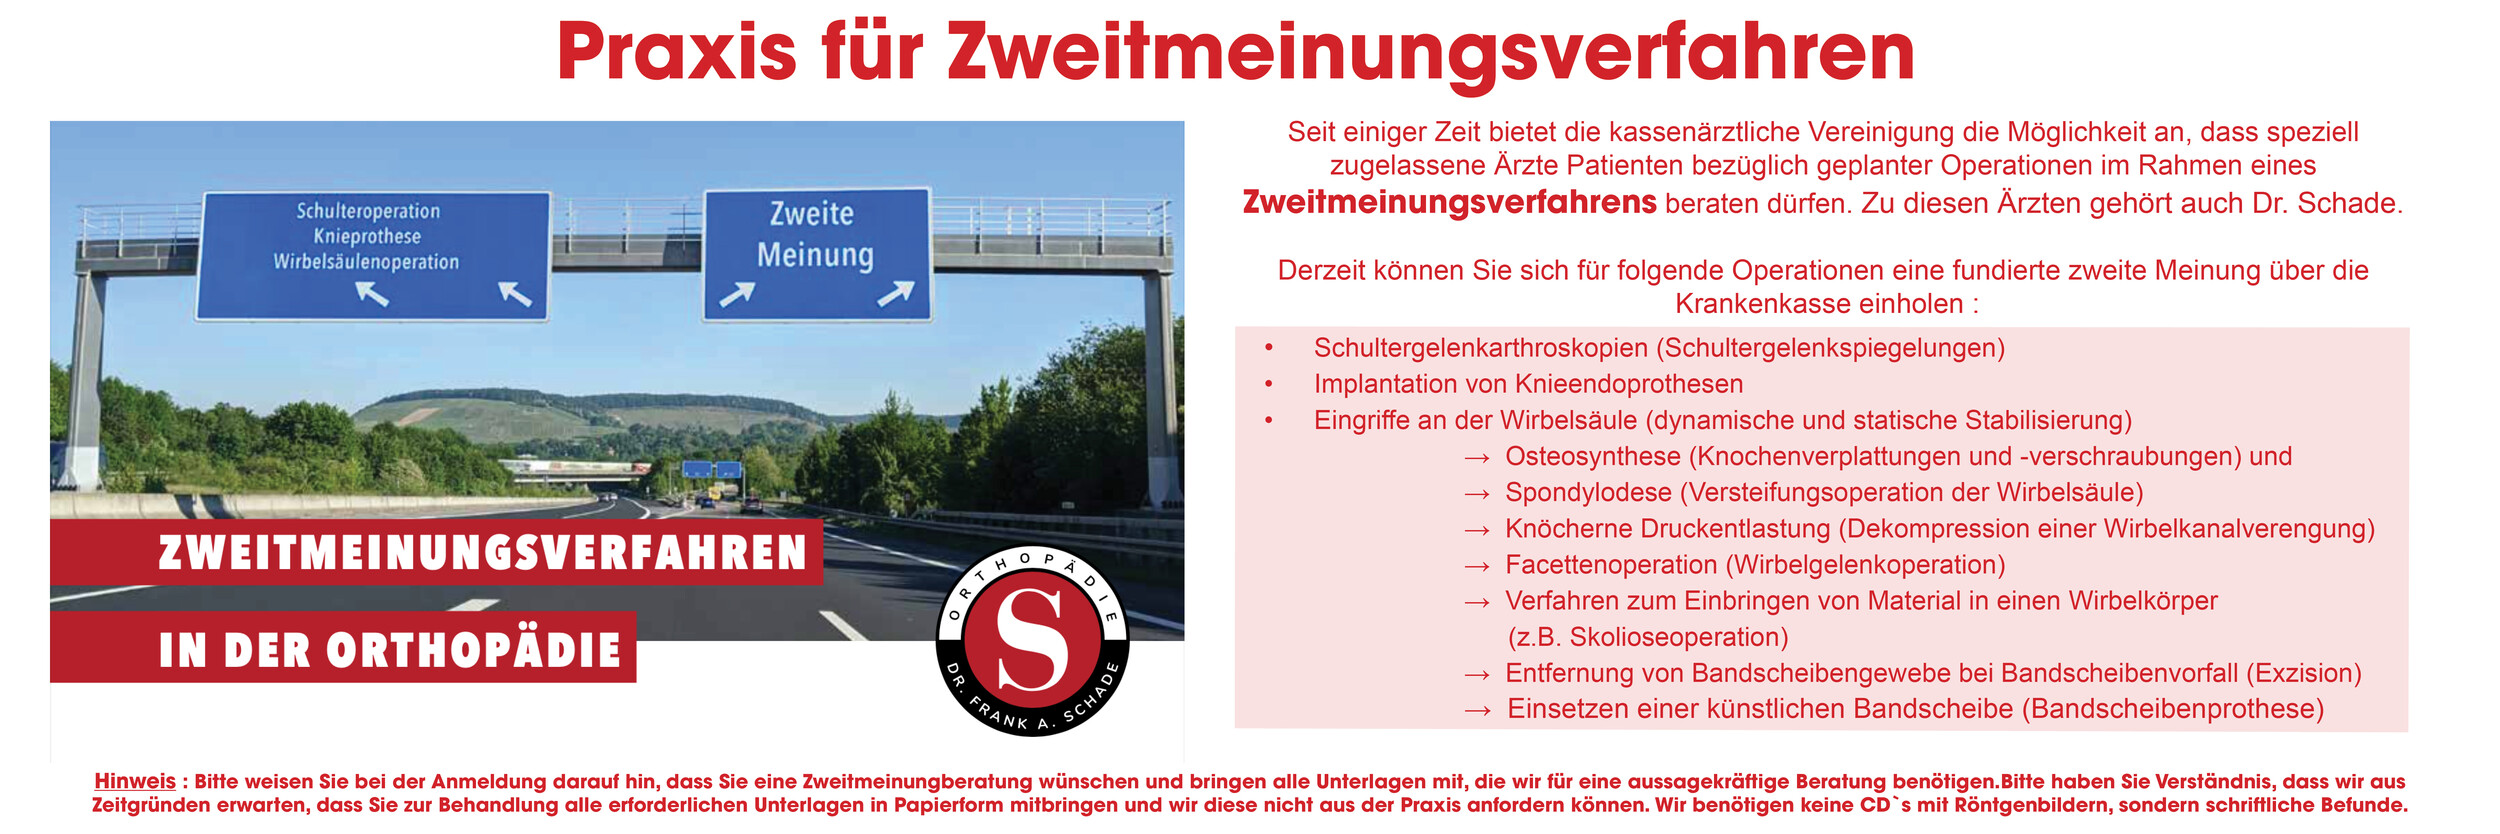  Zweitmeinungsverfahren_Autobahn_5.jpg